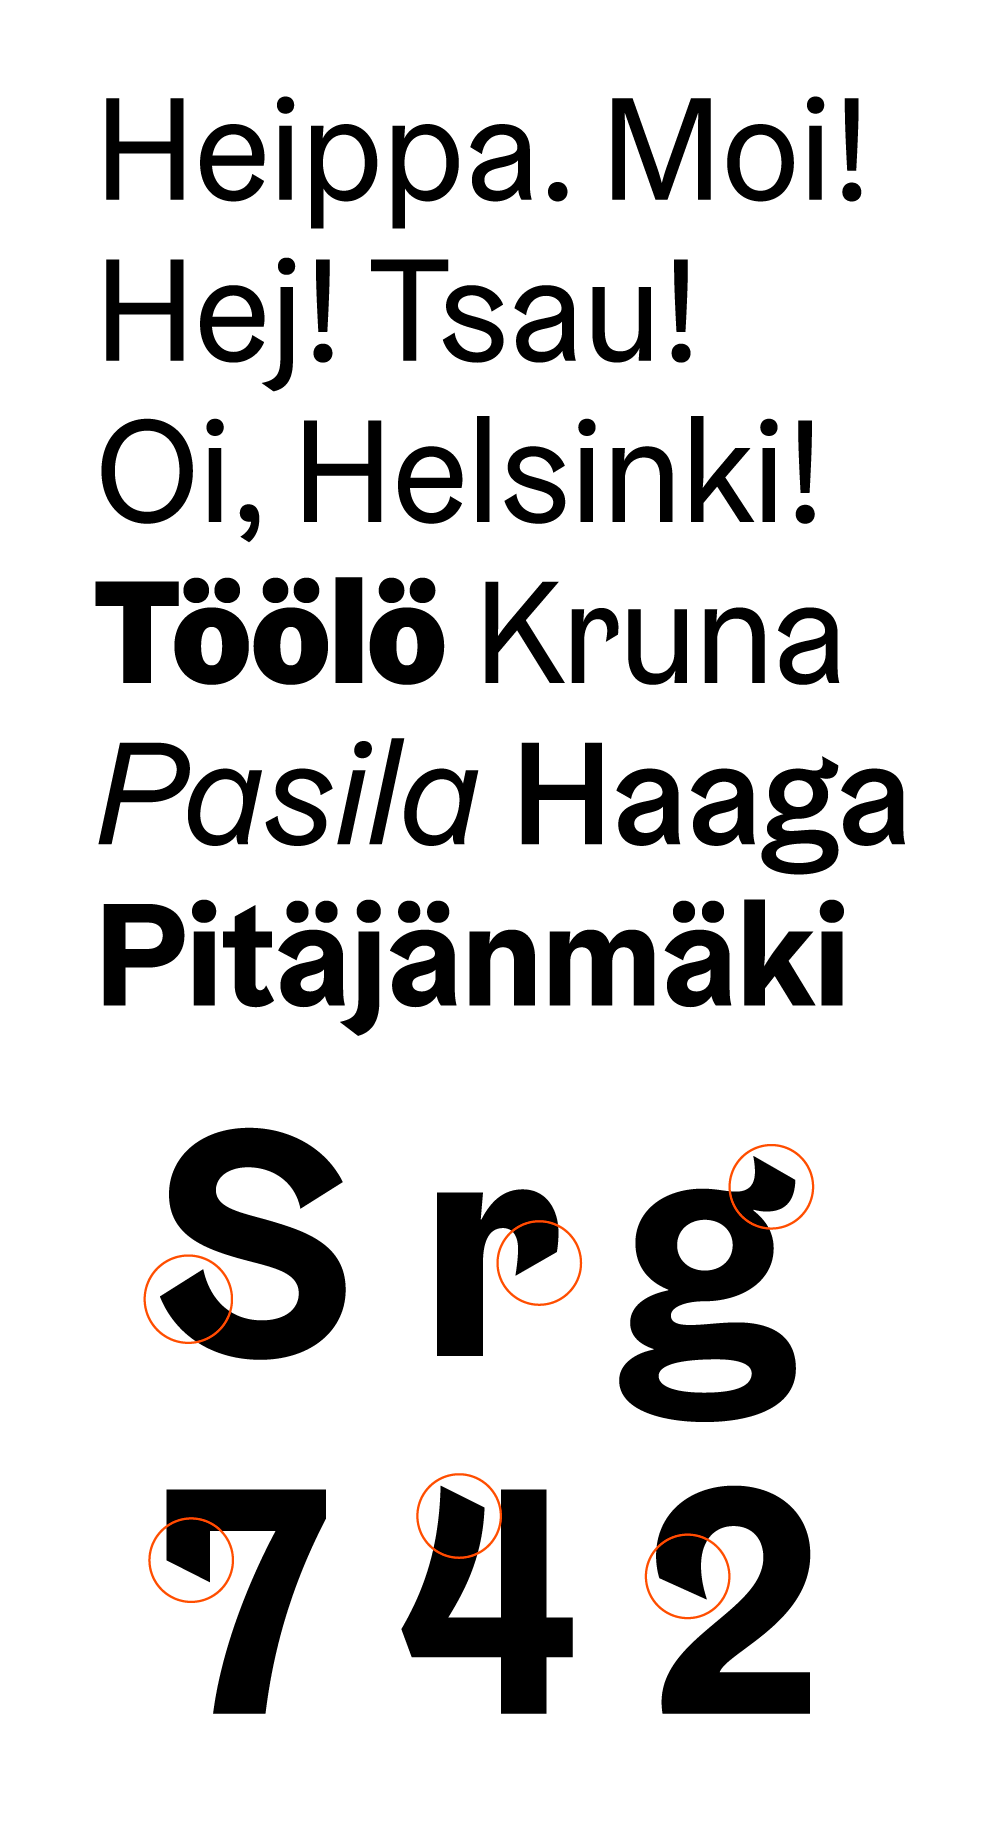 New Logo and Identity for Helsinki by Werklig